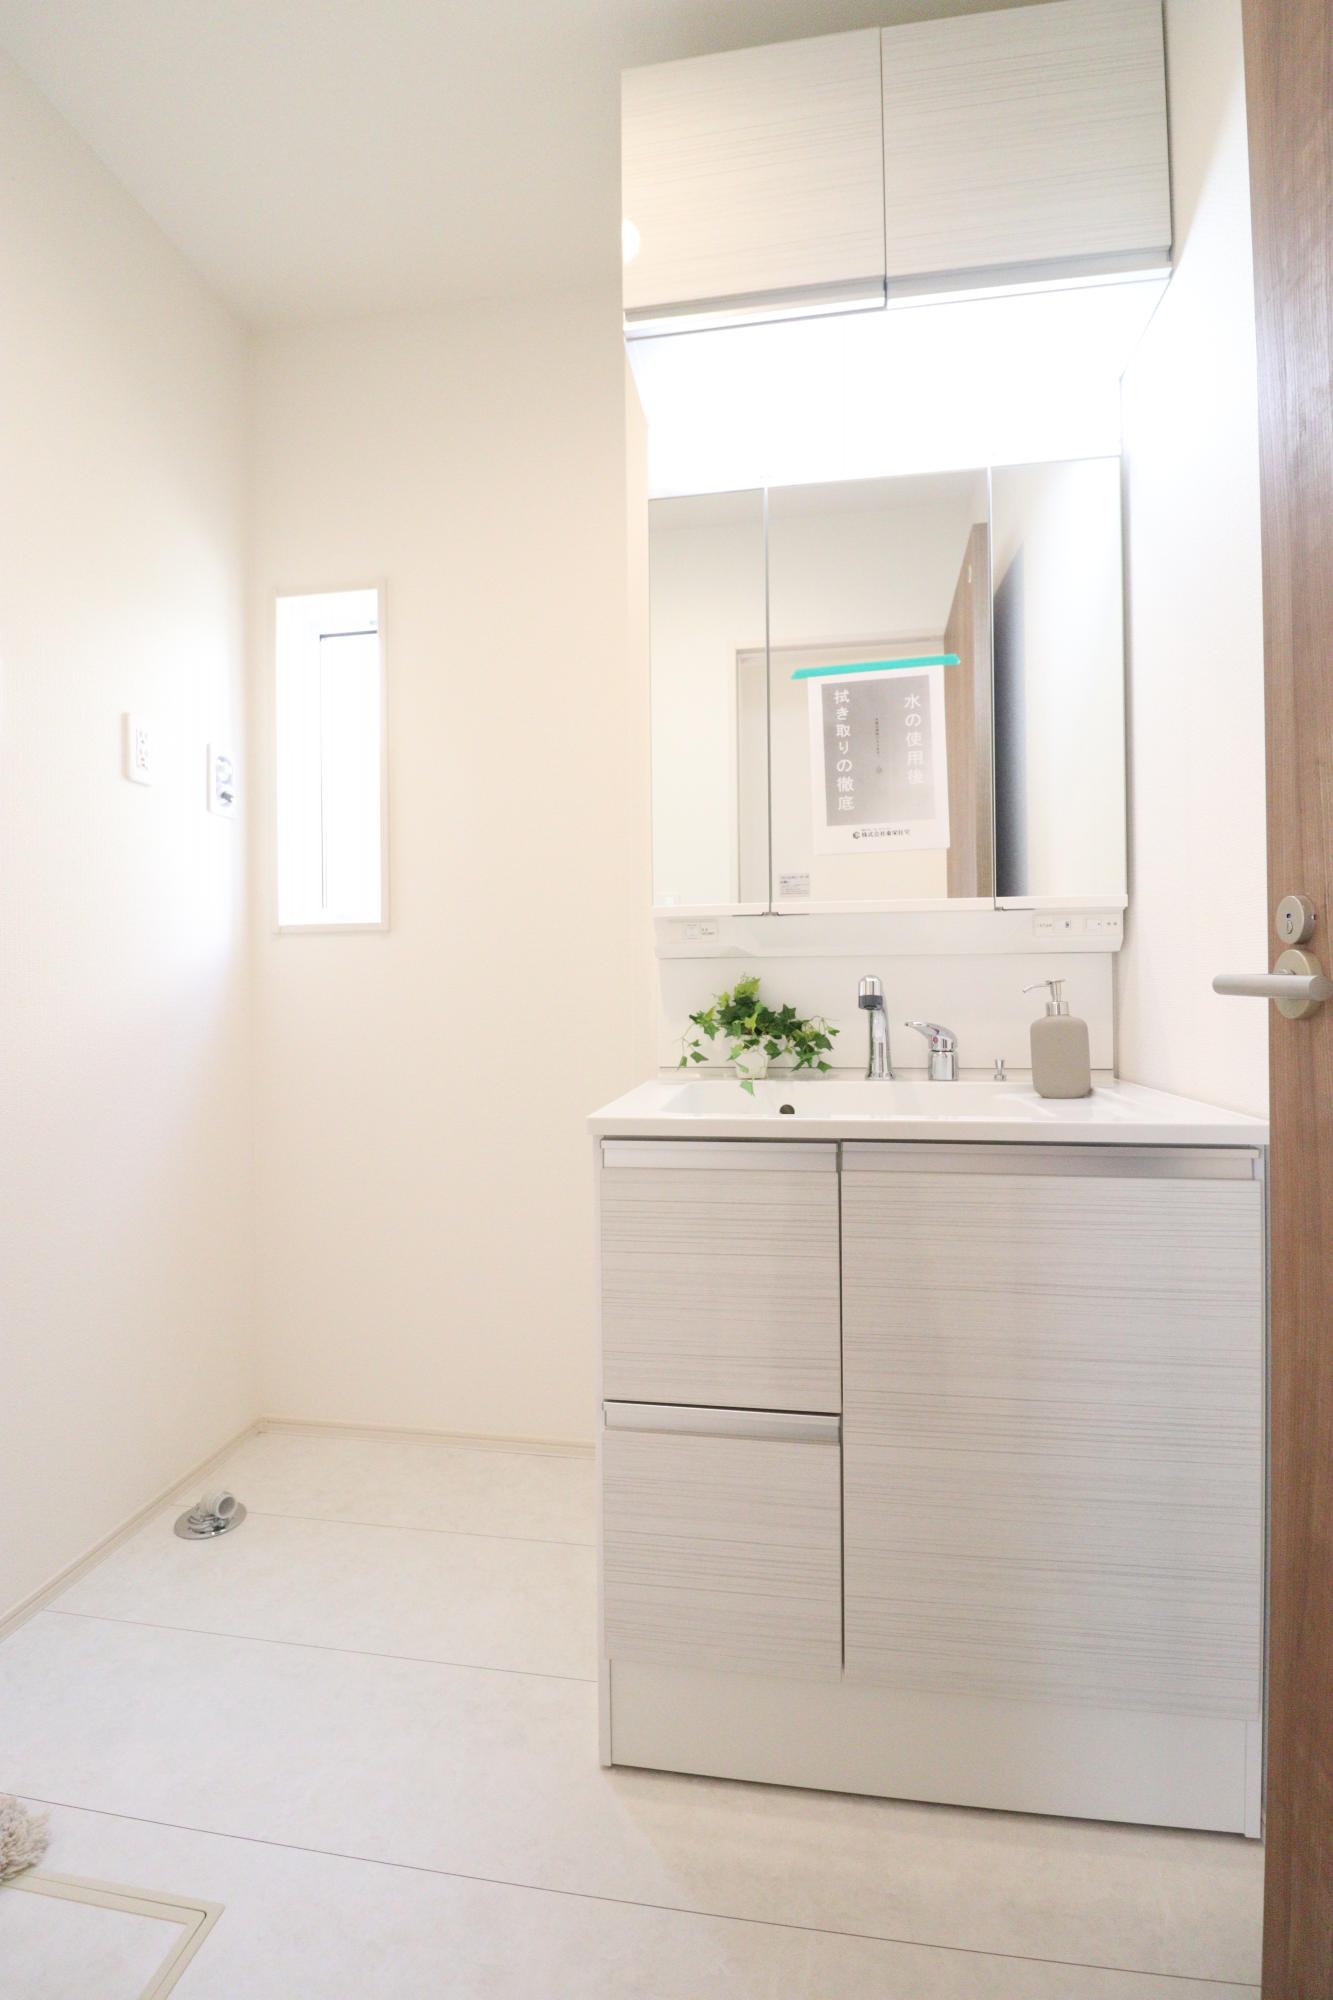 【洗面化粧台】収納力と機能性に優れたシャワー付き洗面化粧台! 鏡の内側にも収納スペースがあるので、細かいものも整理しやすいです。